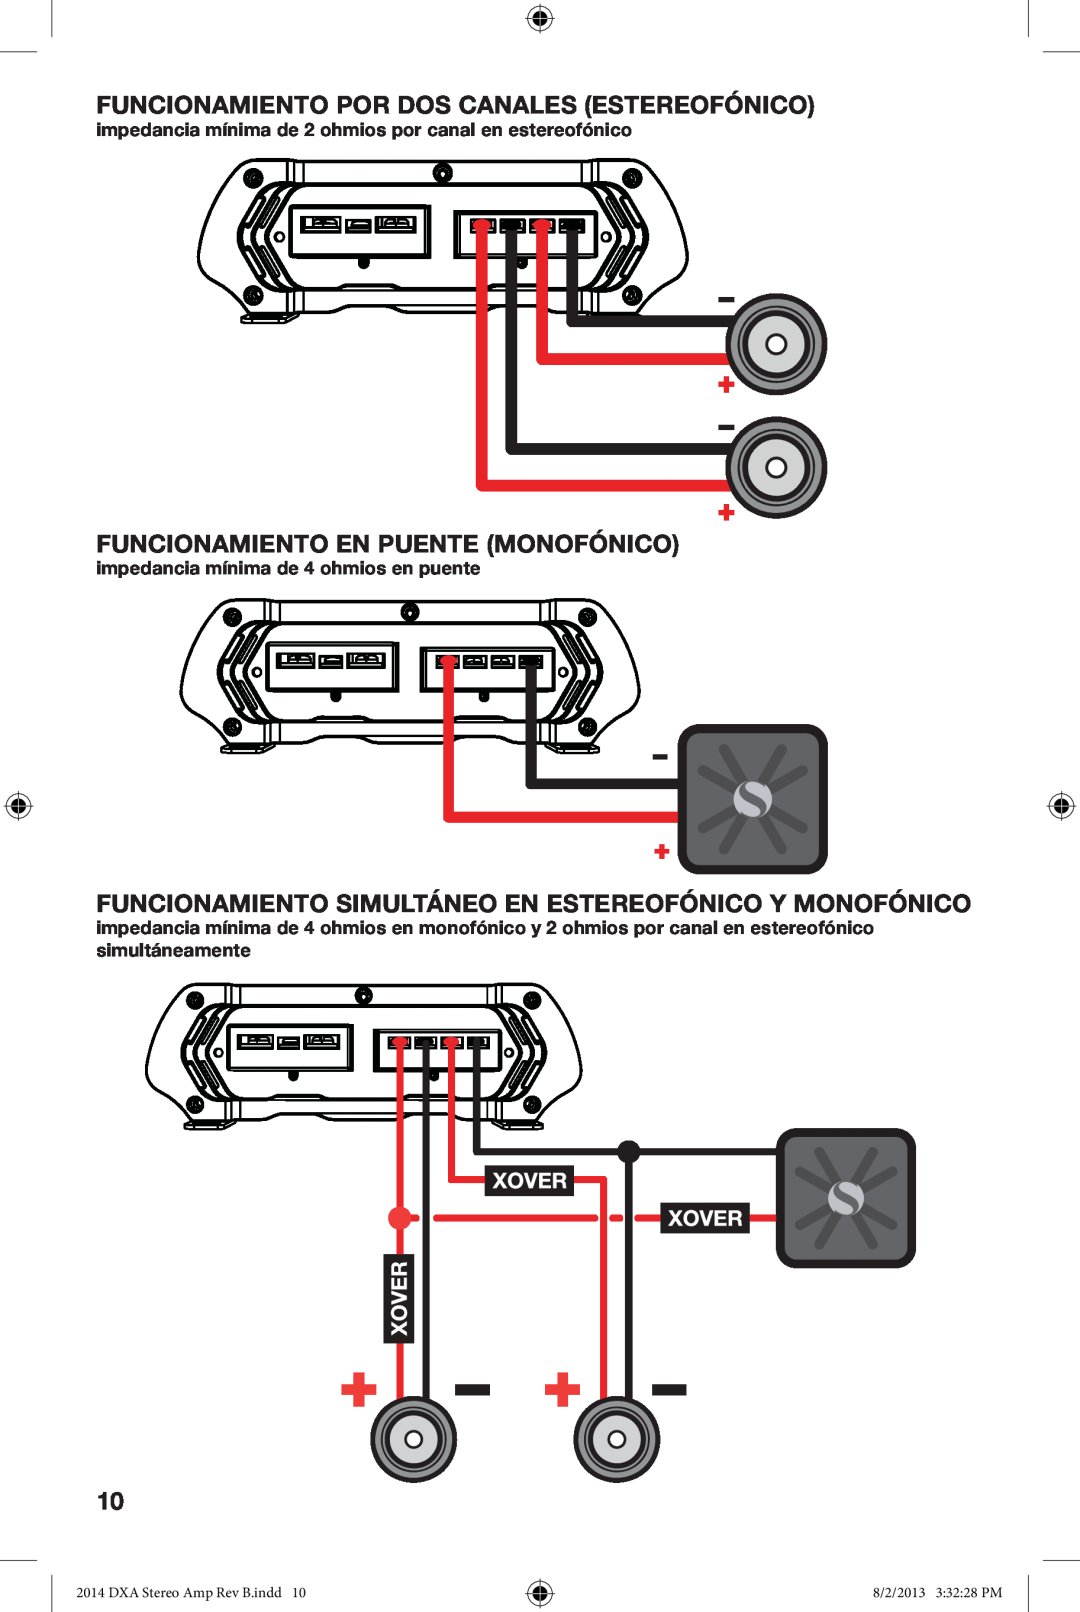 Kicker DXA125.2 owner manual Funcionamiento Por Dos Canales Estereofónico, Funcionamiento En Puente Monofónico 